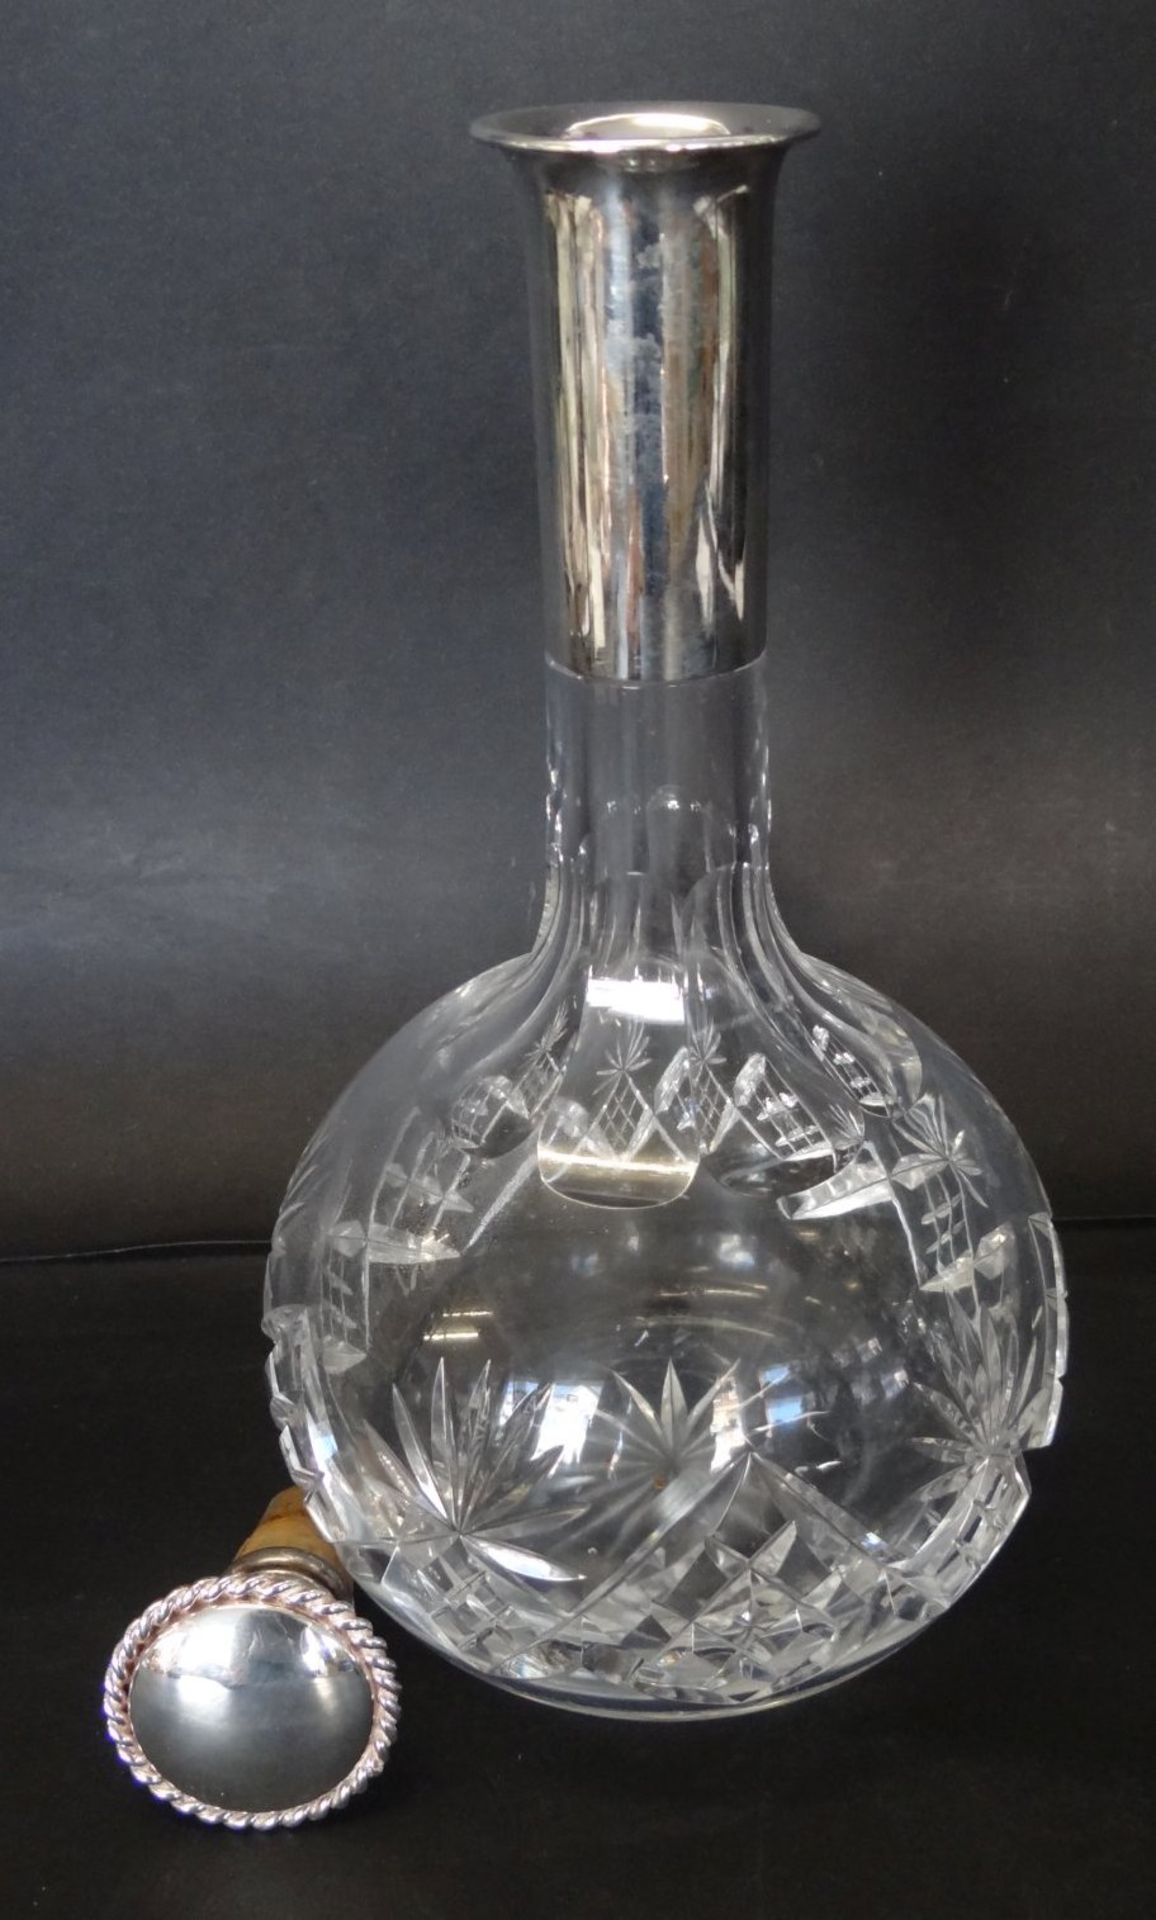 Kristallkaraffe mit Silberhals, -835- WTB, H-24 cm, anbei nicht originaler Korkenhalter - Bild 2 aus 4